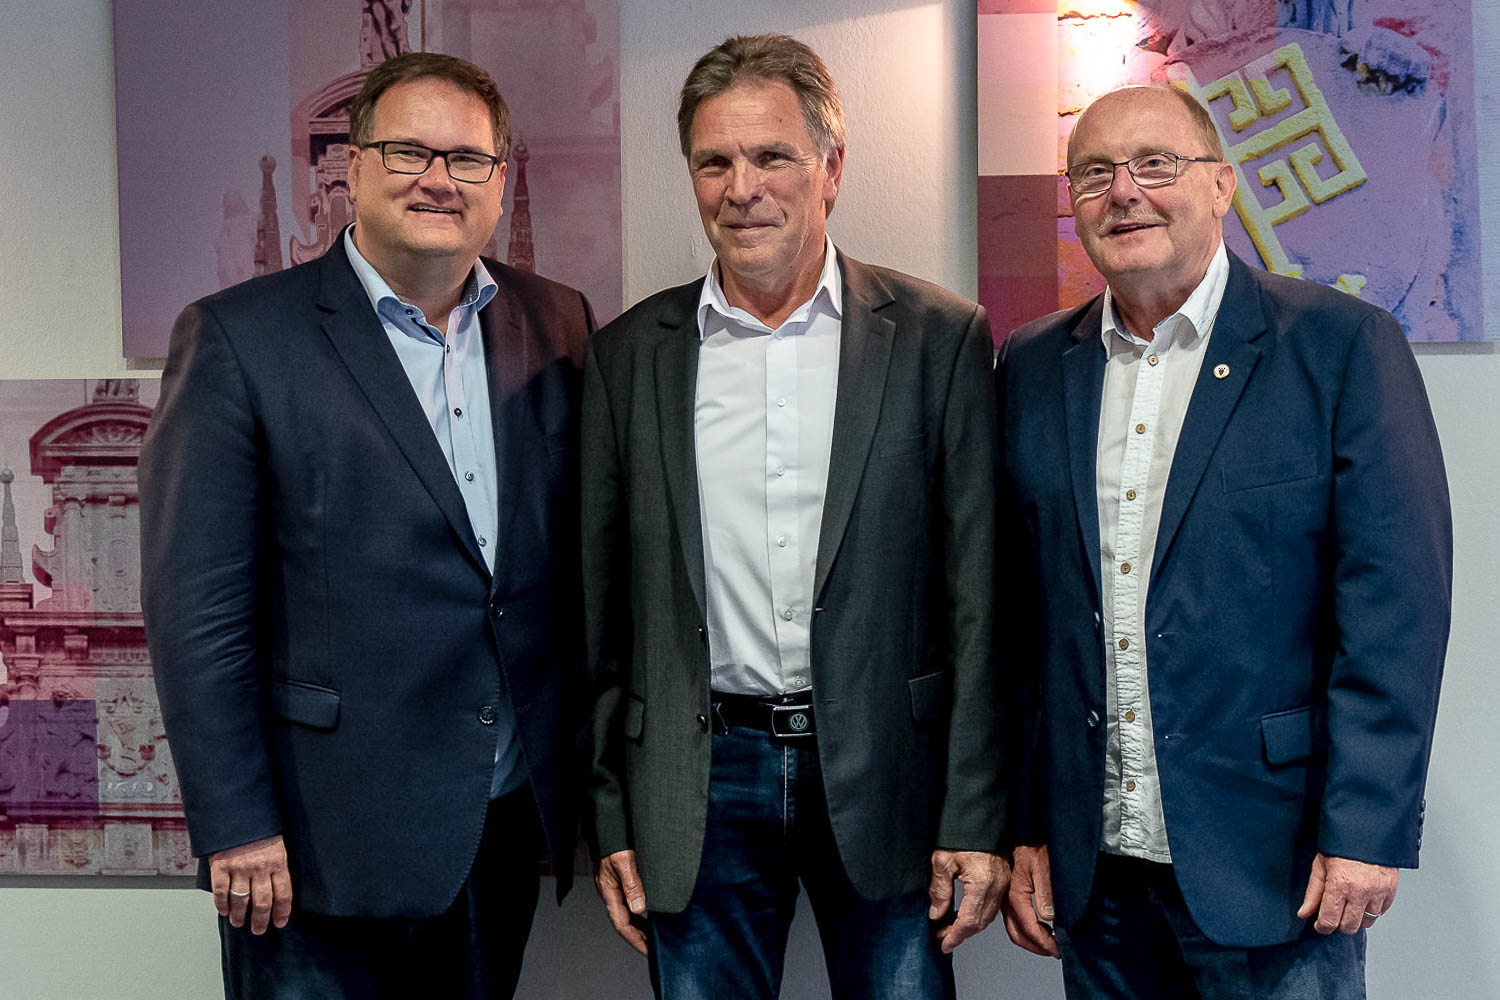 BFV-Präsident Björn Fecker mit den neuen BFV-Ehrenmitgliedern Michael Grell und Axel Zielinski (v.l.). (Foto: Sven Peter - spfoto.de)